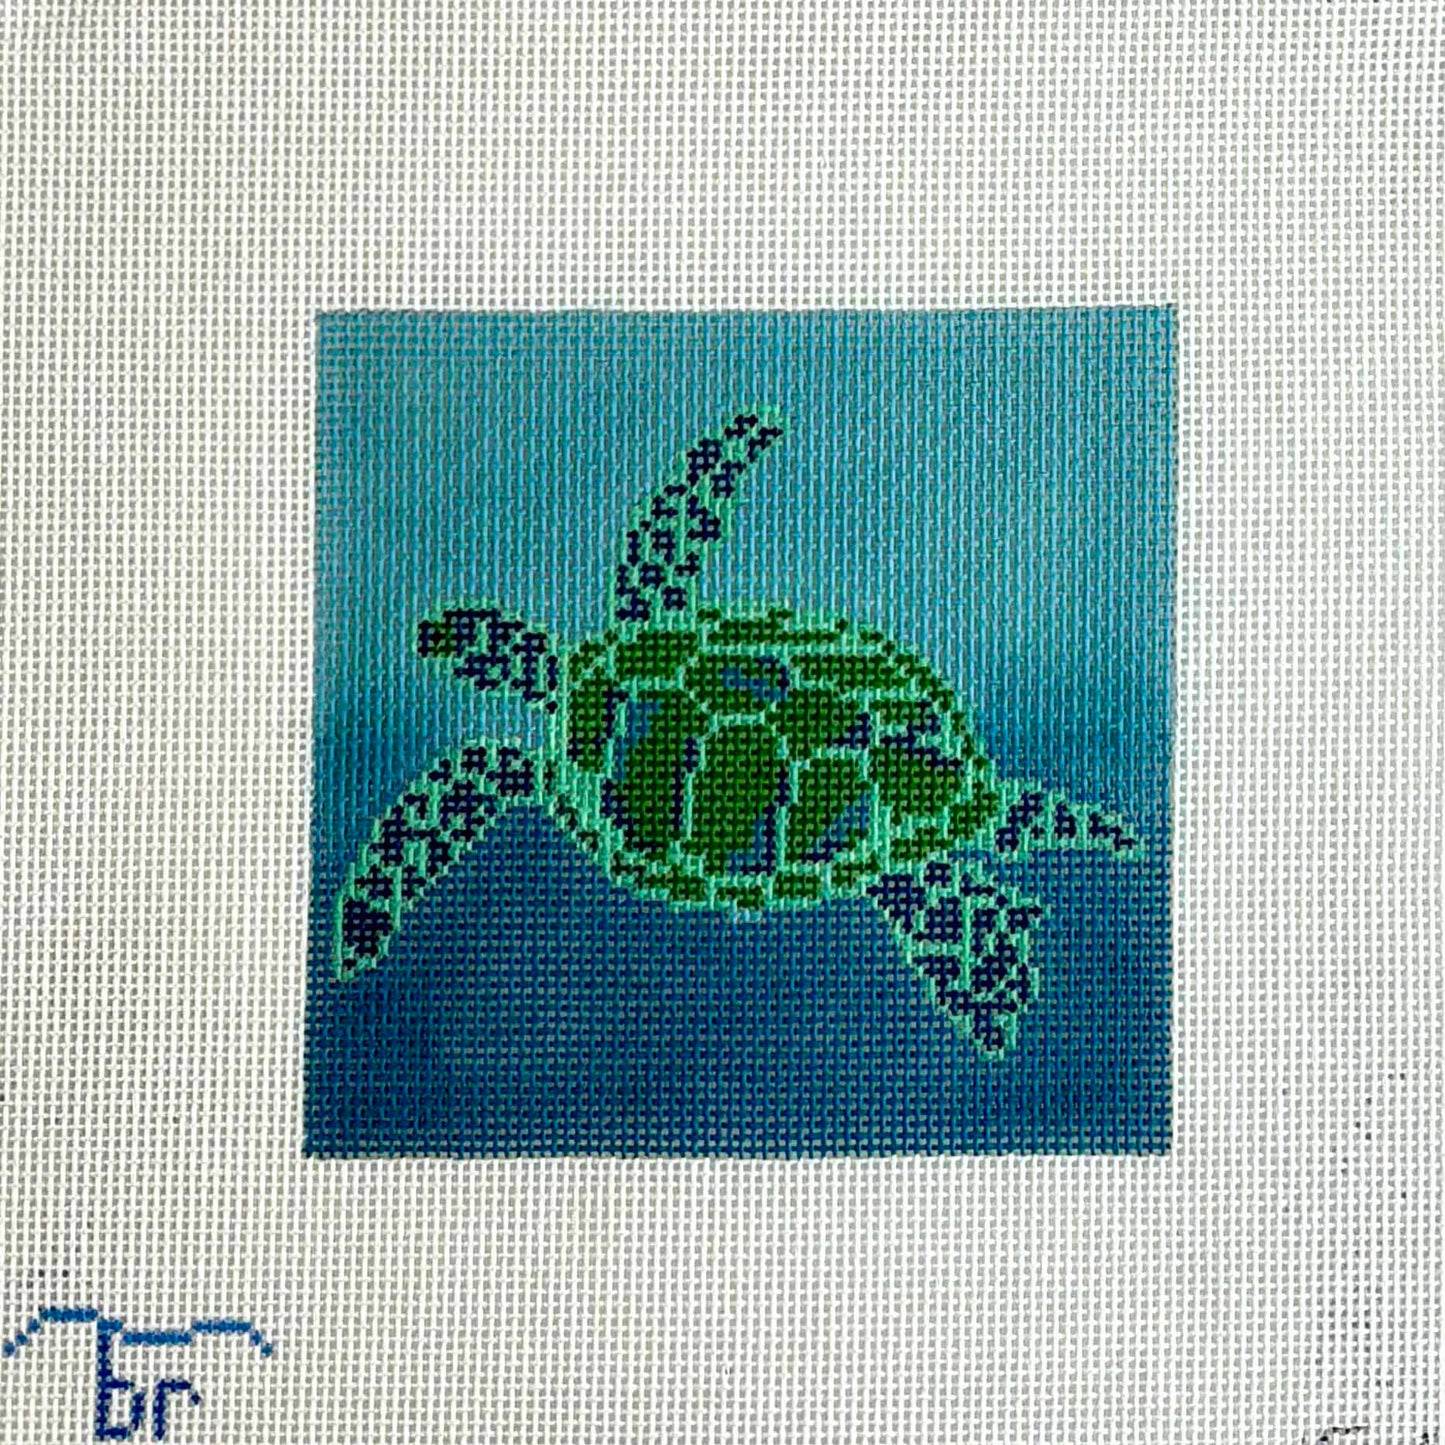 Sea Turtle - 5 inch square